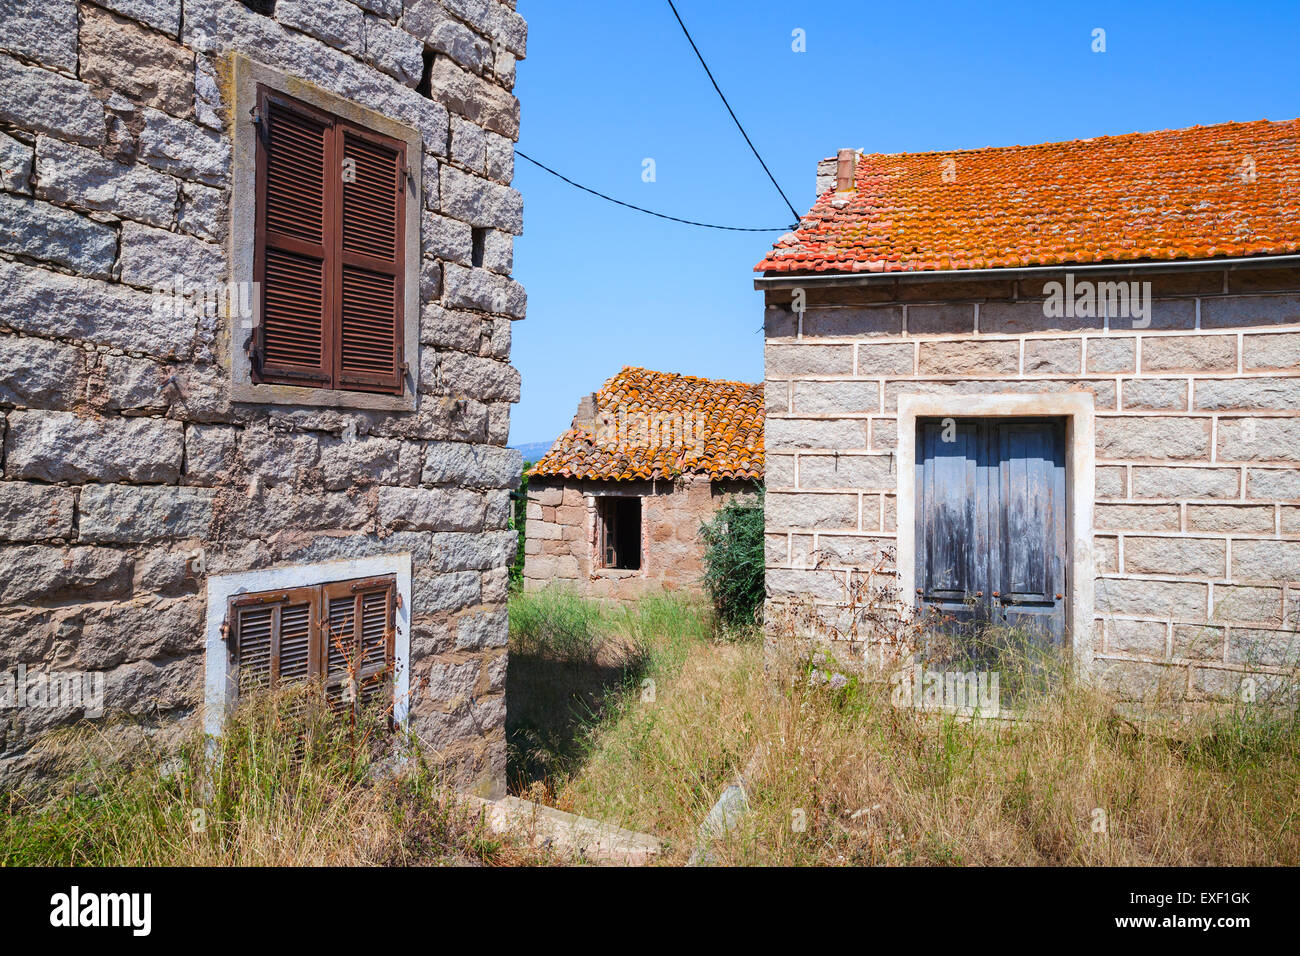 Figari Süd-Korsika, ländliche Architektur Beispiel. Alte Wohnhäuser aus Steinen mit roten Ziegeldächern, Holztüren und Fenster gemacht Stockfoto